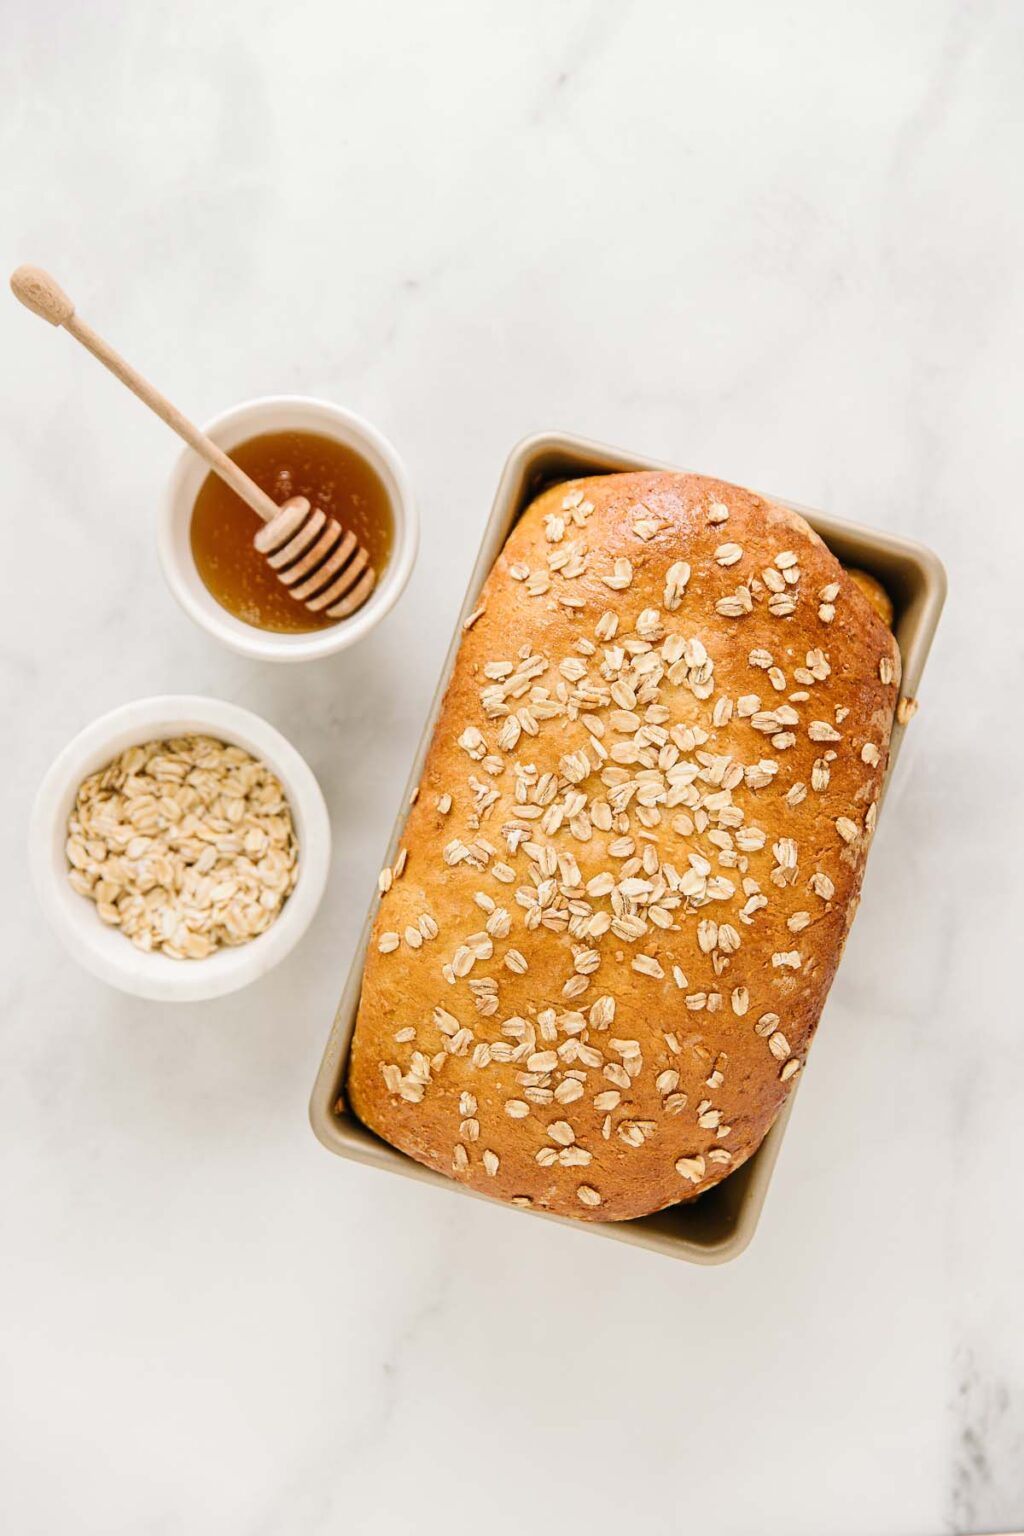 Homemade Honey Oat Bread Recipe (TO DIE FOR!)